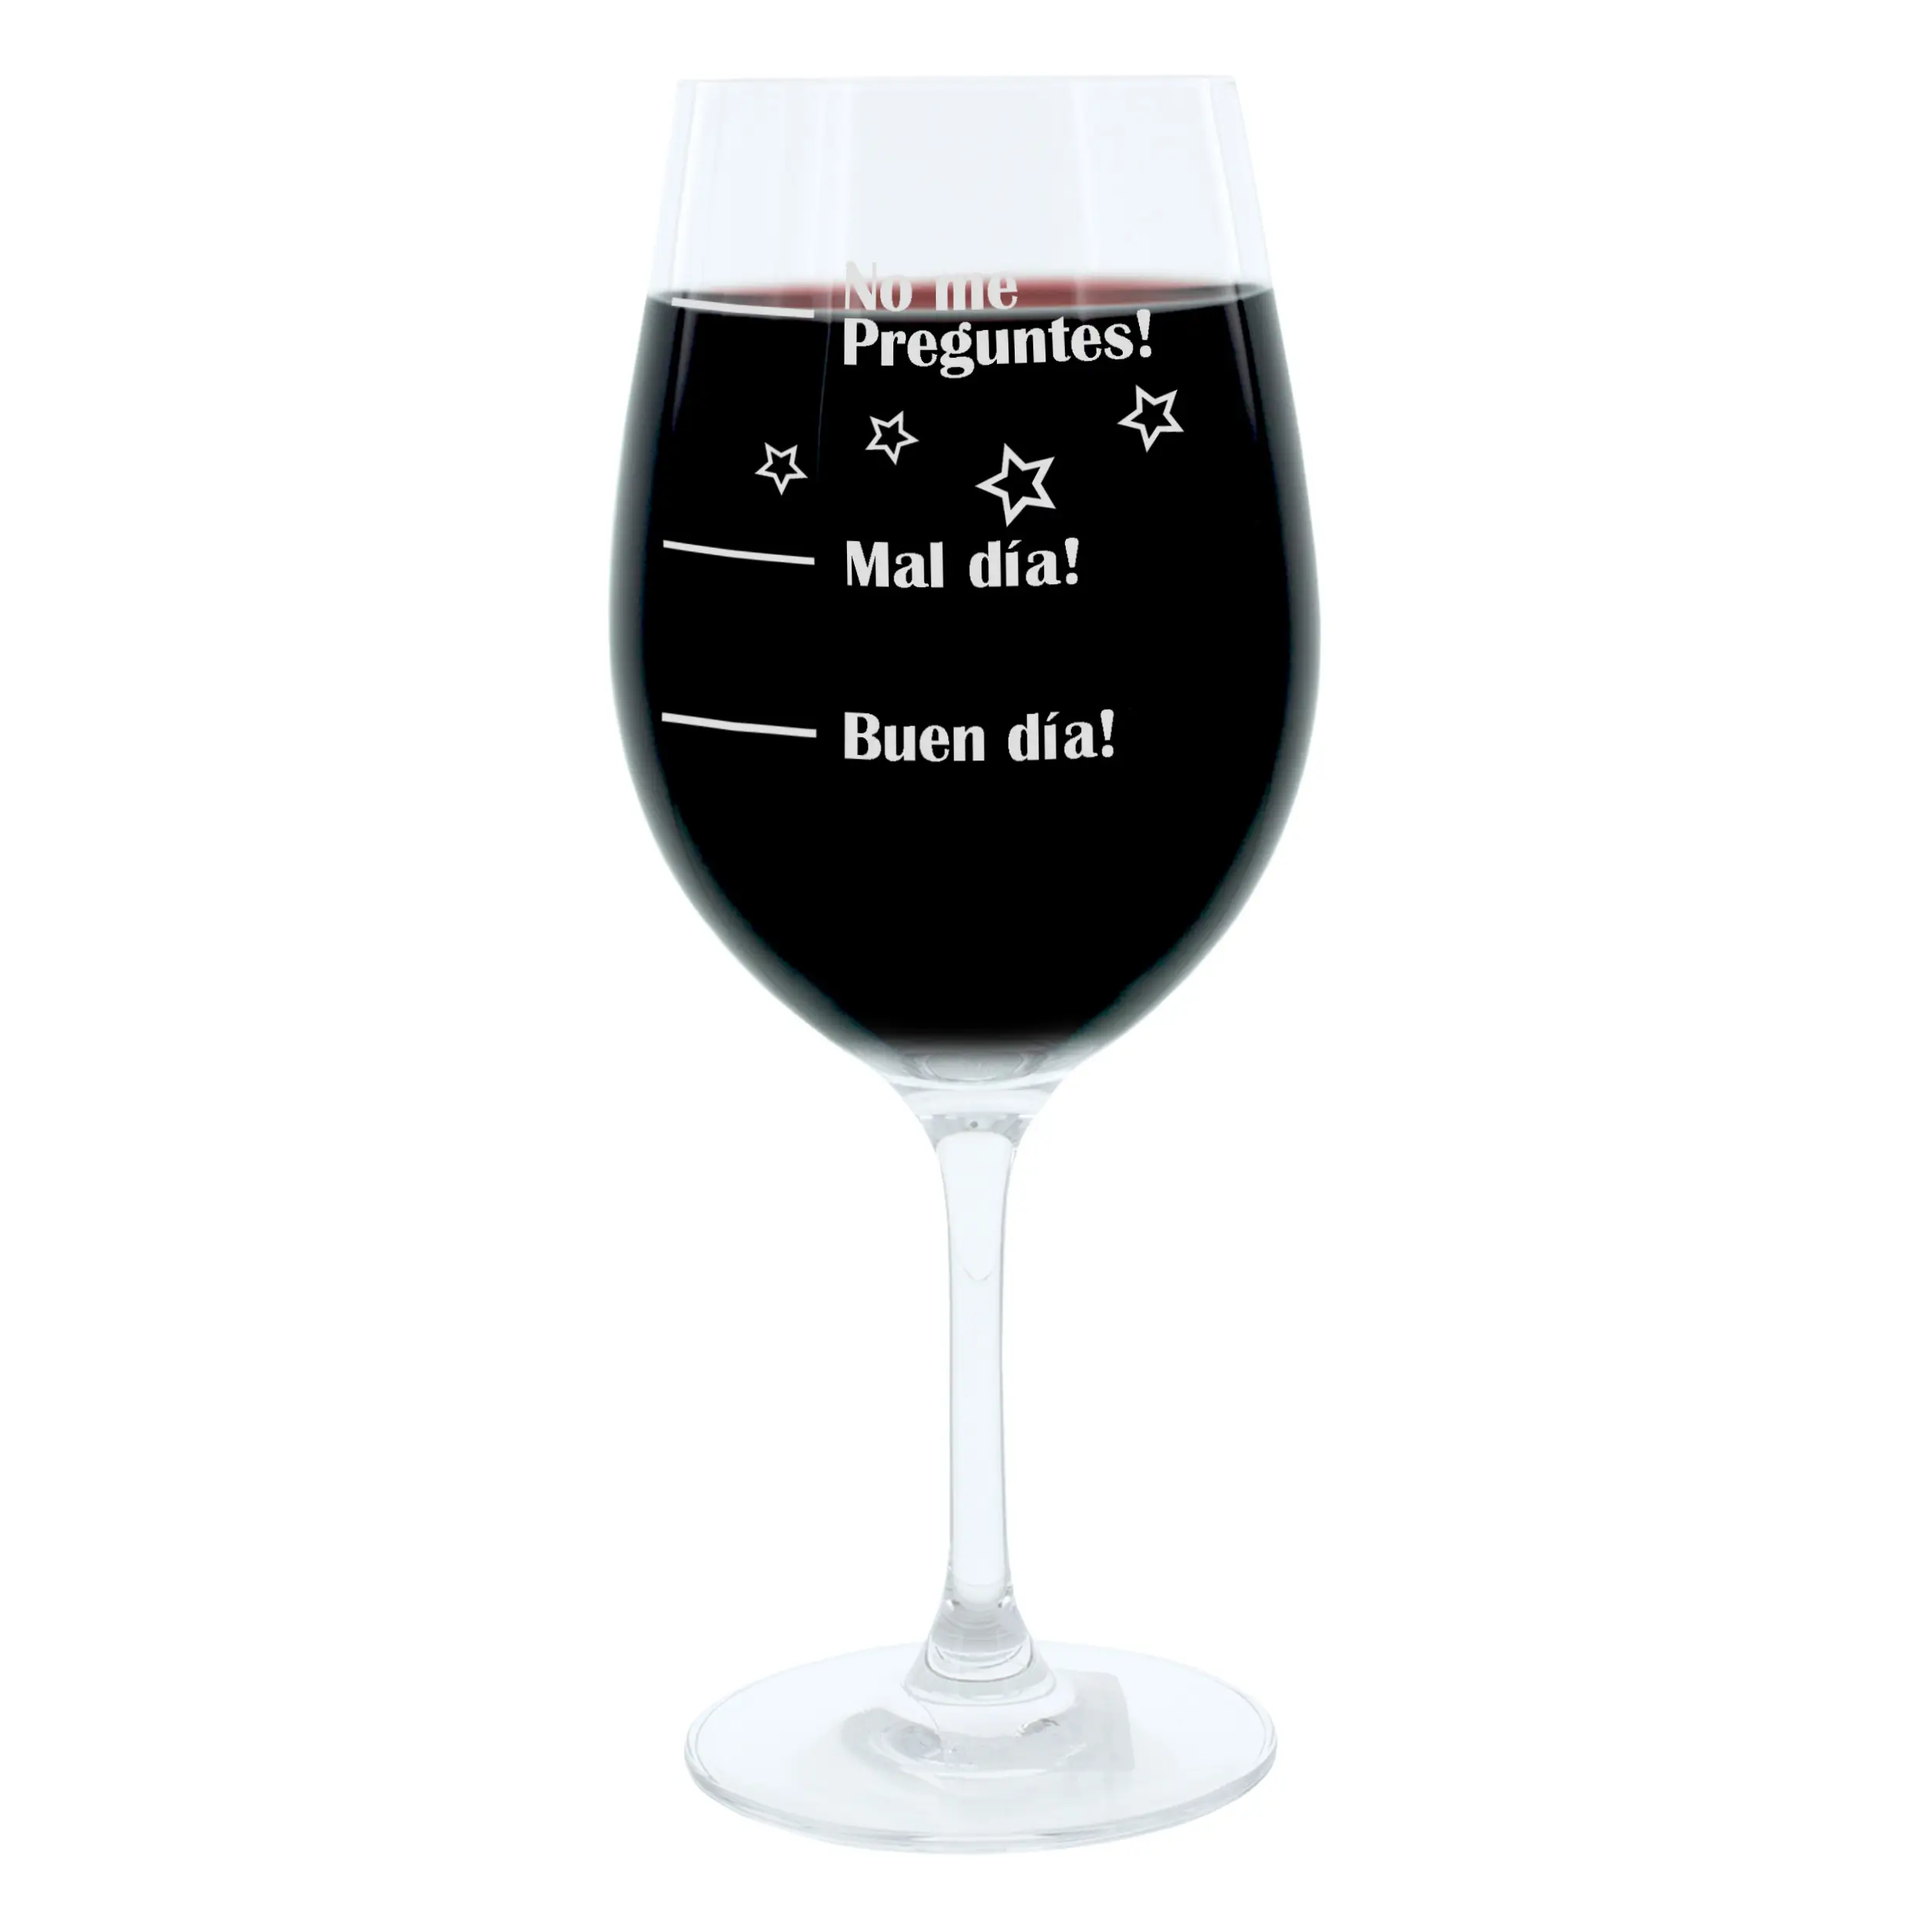 Weinglas Buen XL D铆a!